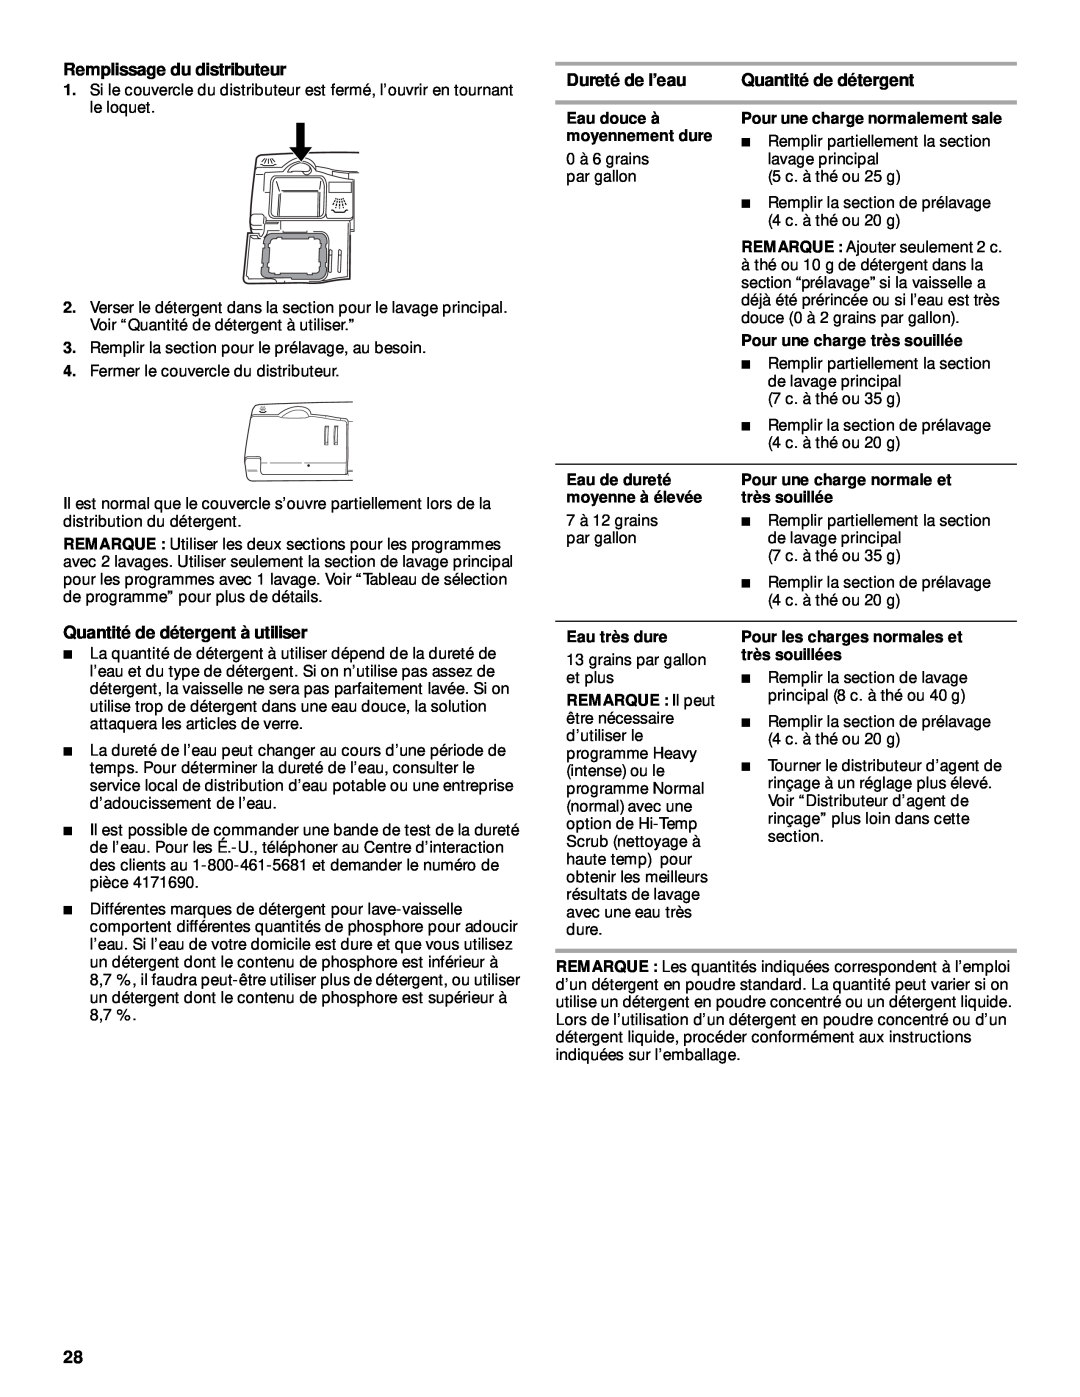 KitchenAid KUDP01TJ manual Remplissage du distributeur, Dureté de l’eau, Quantité de détergent à utiliser 